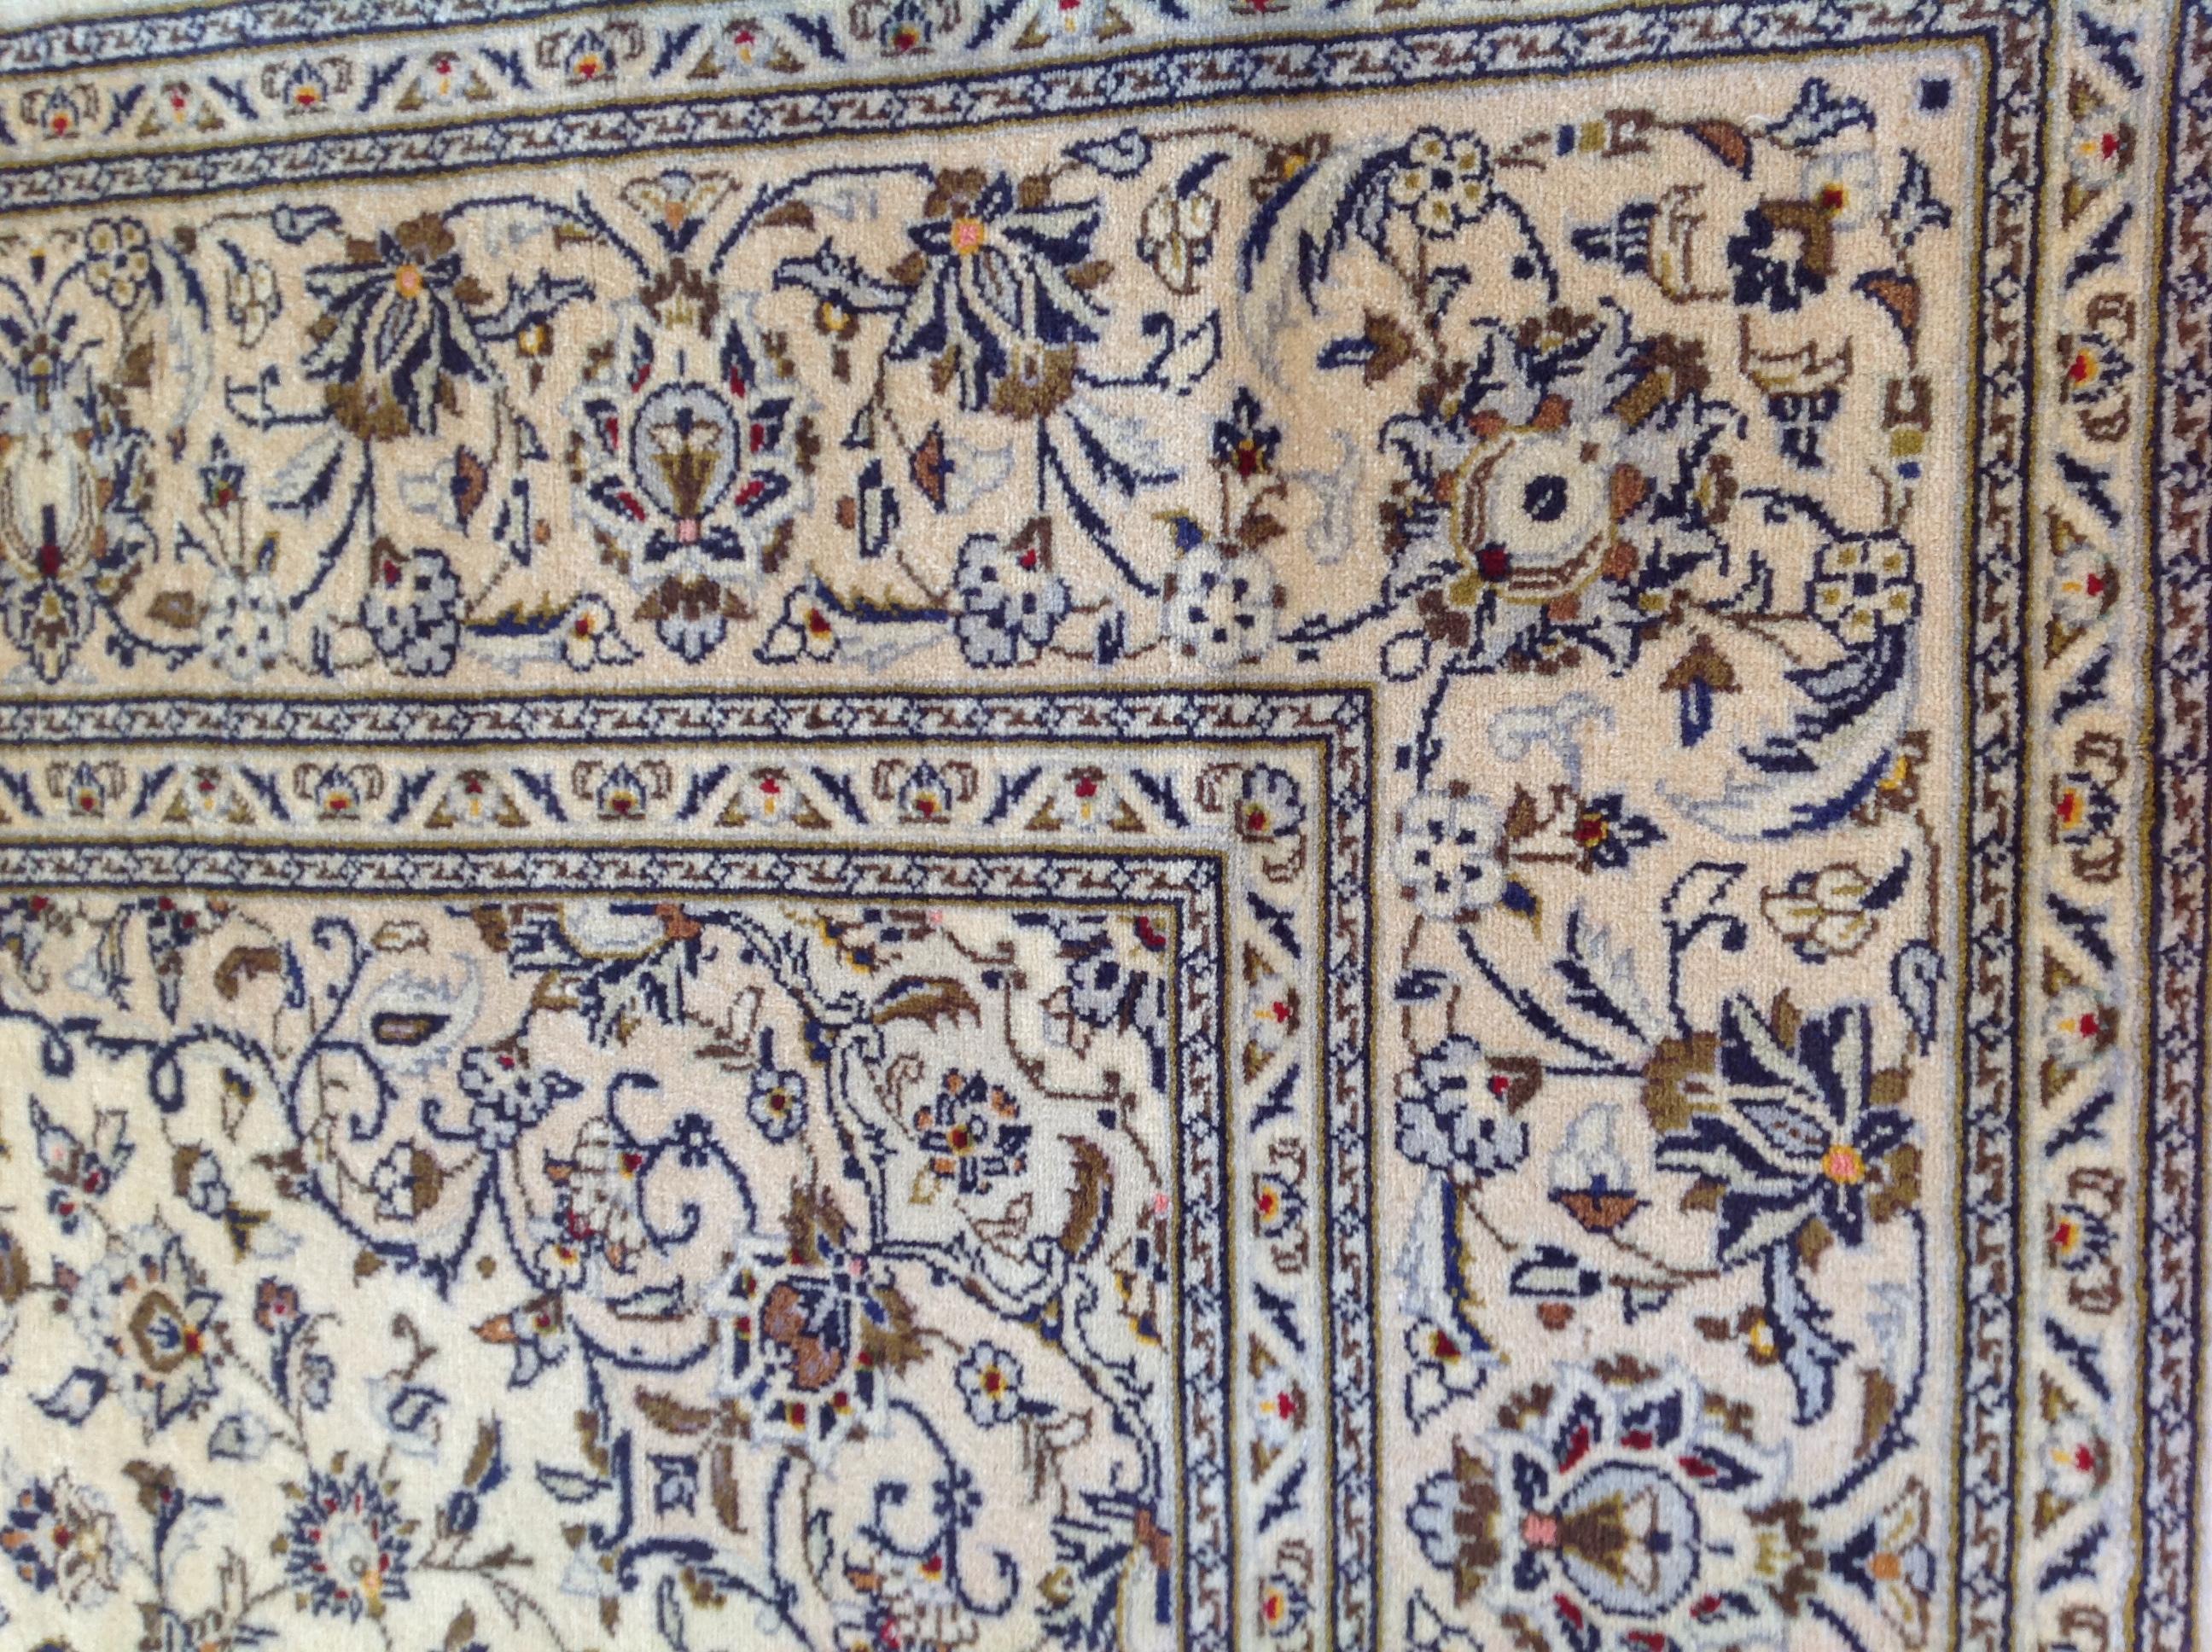 Verströmen Sie Eleganz und Raffinesse mit diesem vinatge Kashan-Teppich. Sein exquisites, aus reiner Wolle gefertigtes Design verleiht jedem Raum eine luxuriöse Note. Entdecken Sie die zeitlose Schönheit dieses Stücks, das den Test der Zeit